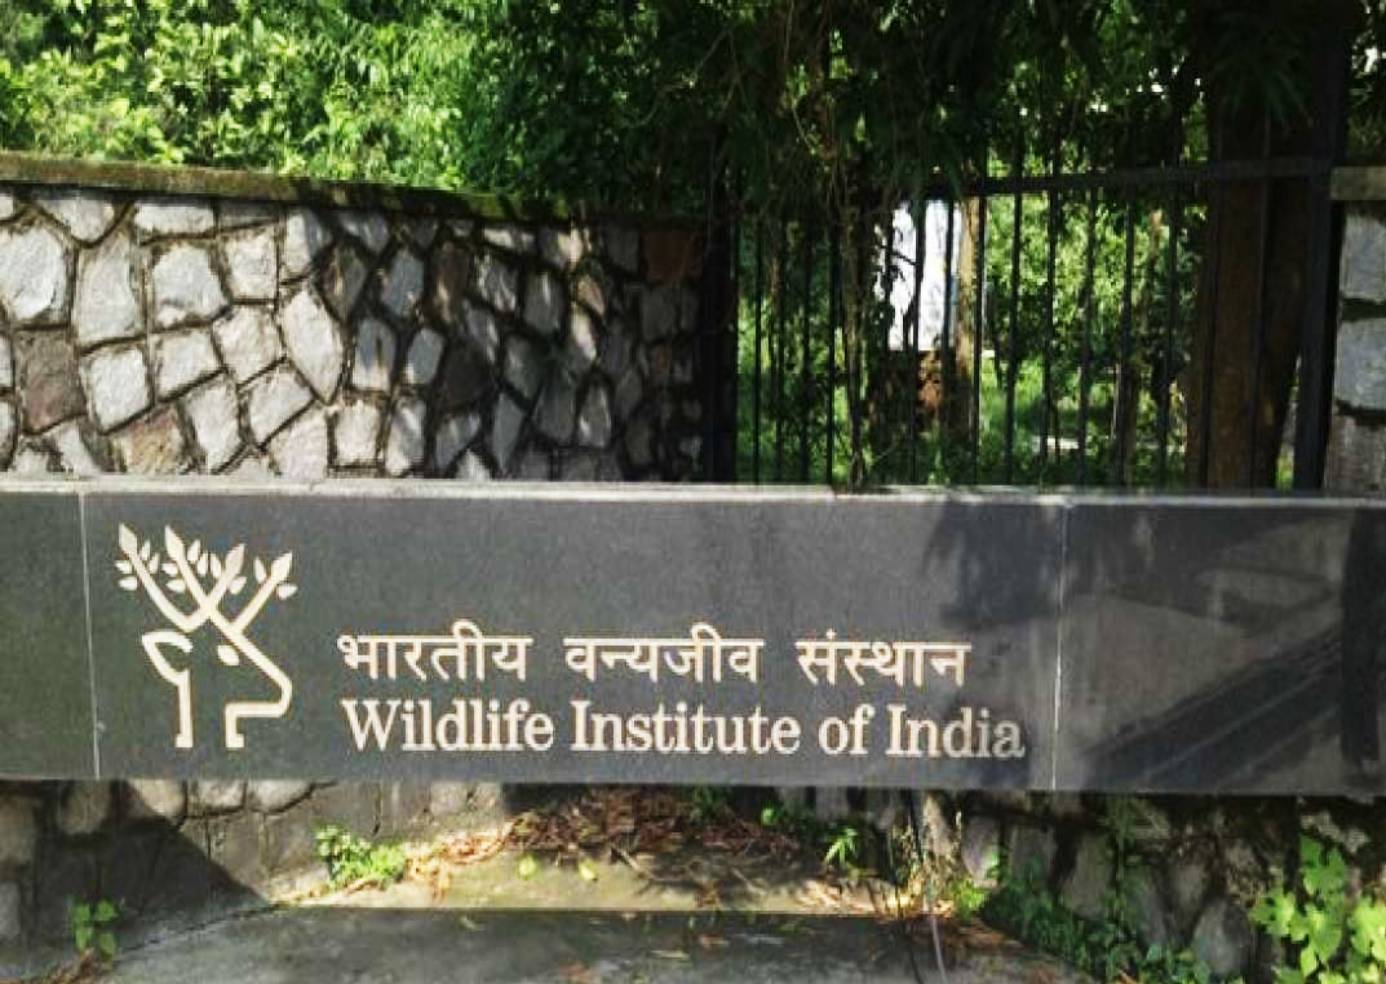 Wild life institute of India